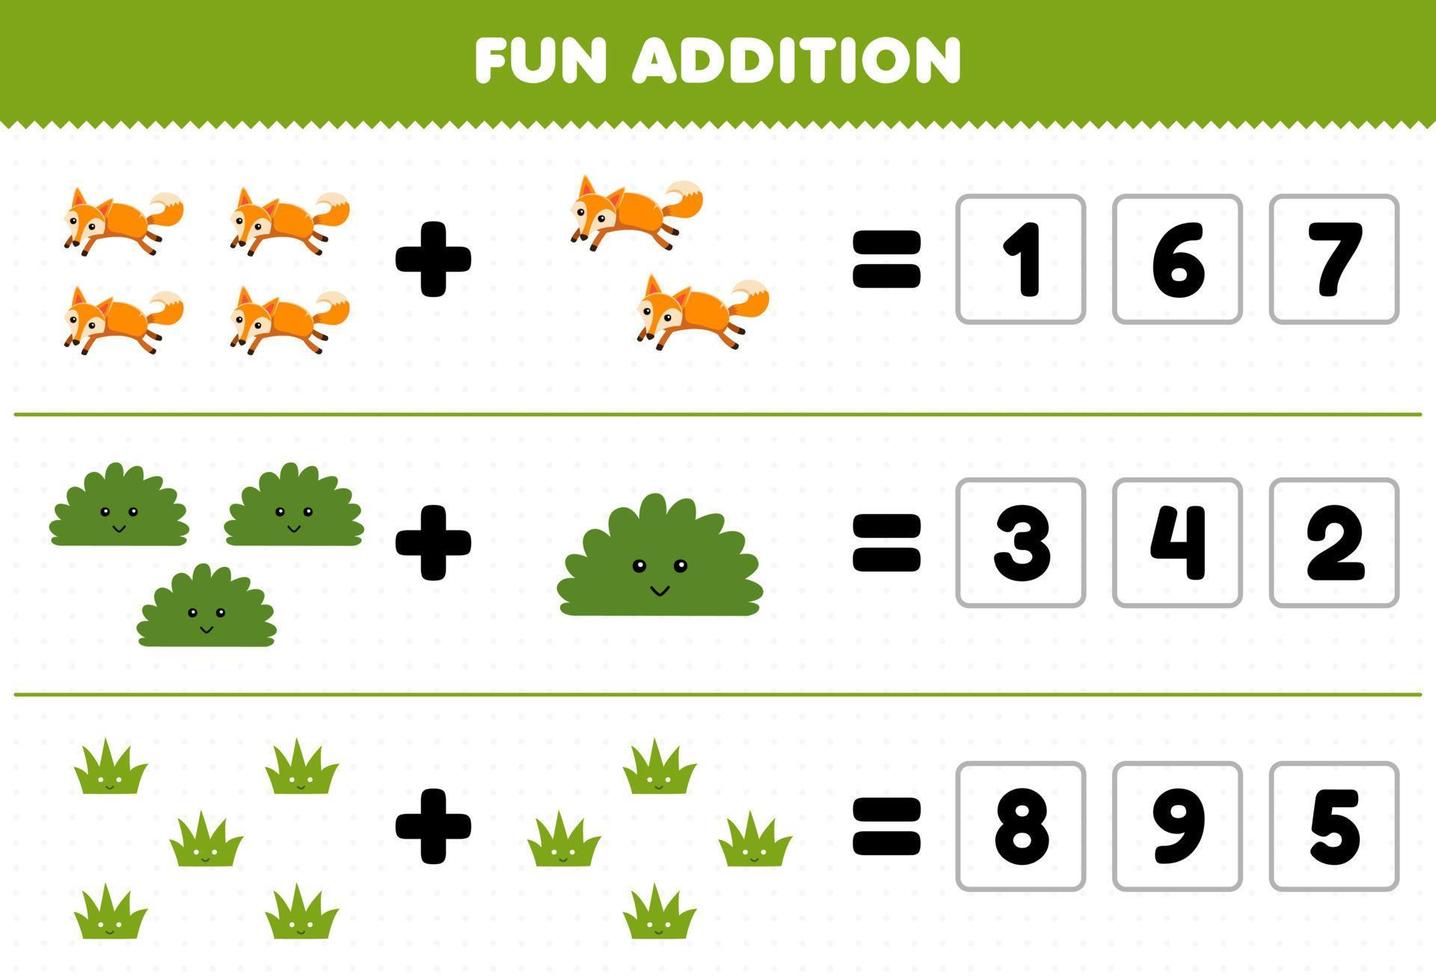 jeu éducatif pour les enfants ajout amusant en devinant le nombre correct de dessin animé mignon renard buisson herbe feuille de travail nature imprimable vecteur